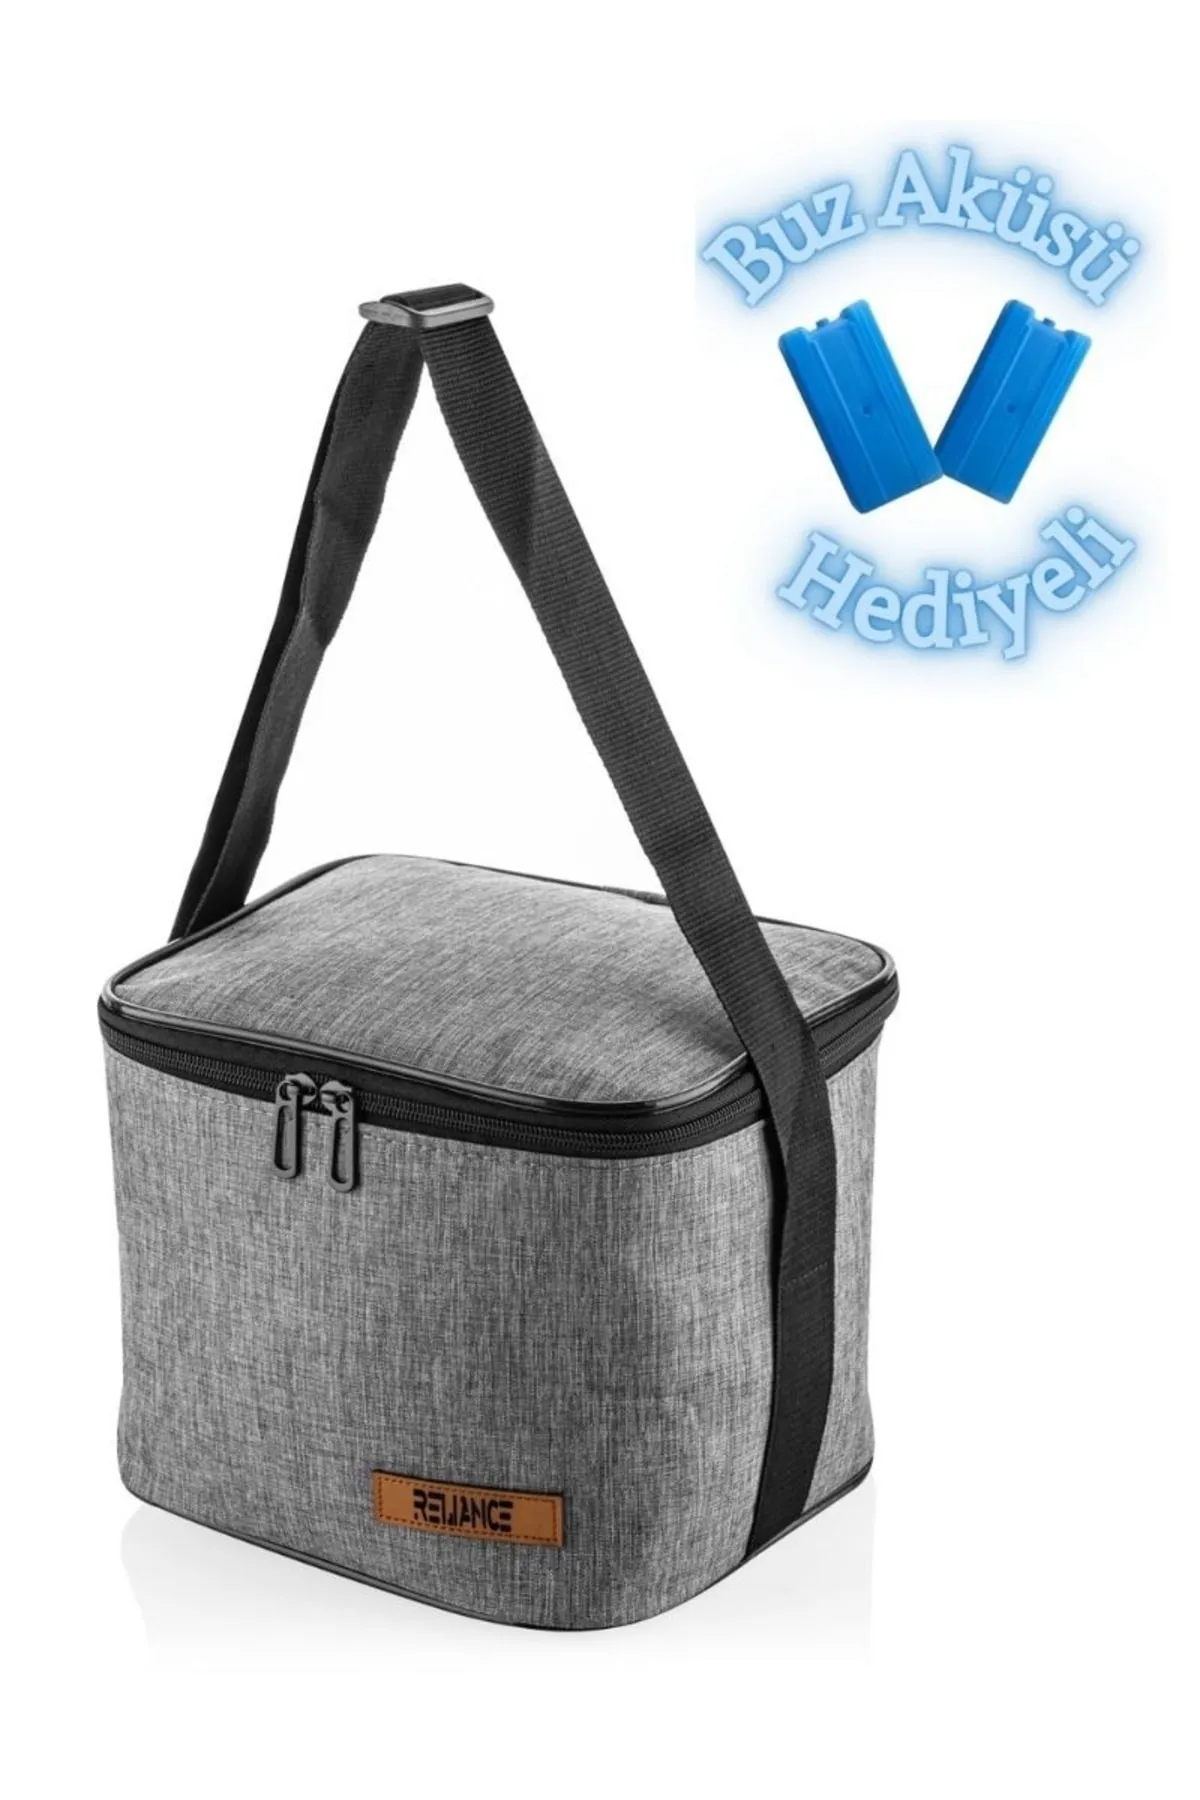 Discover 150+ travel bag reliance trends - 3tdesign.edu.vn